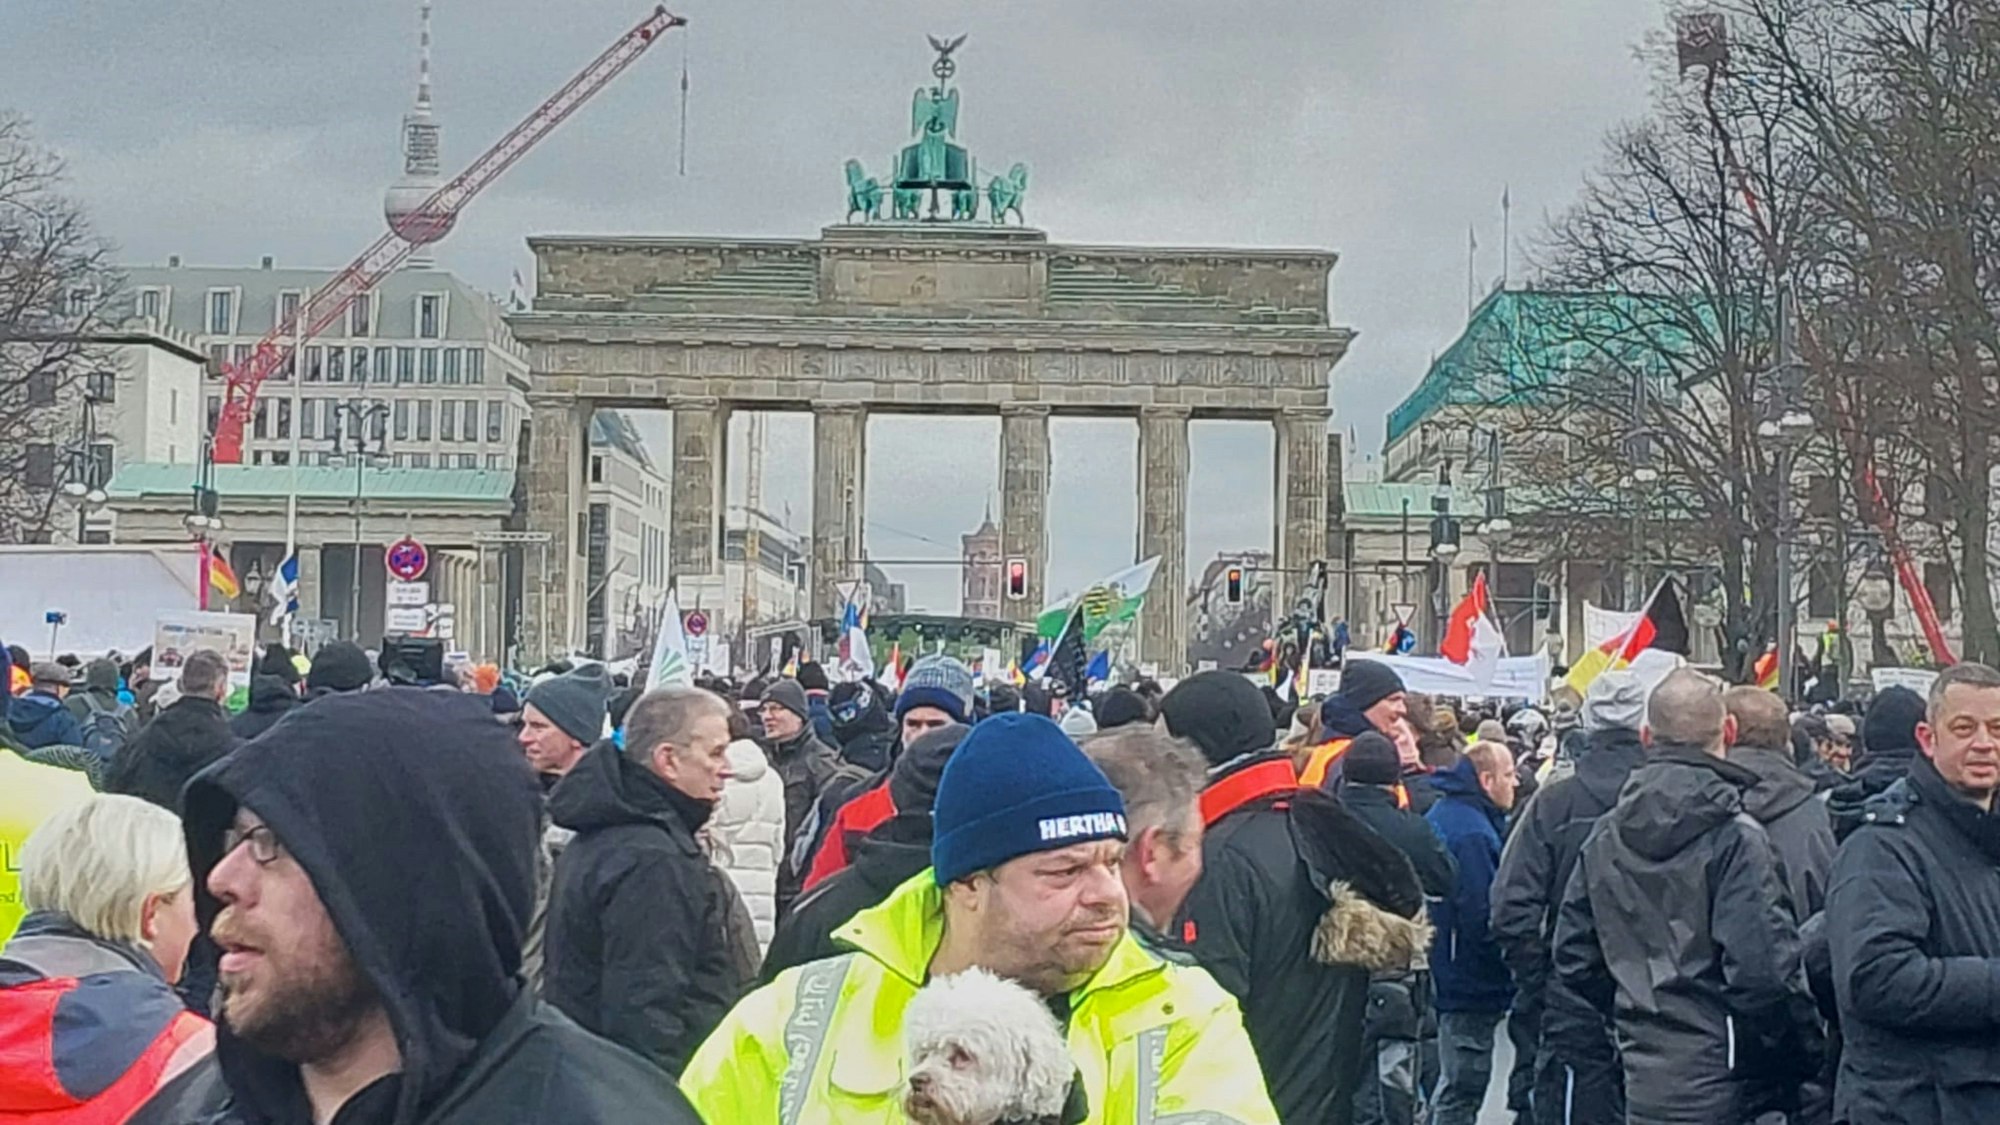 In der Menge vor dem Brandenburger Tor verloren sich die Bauern aus Wachtberg